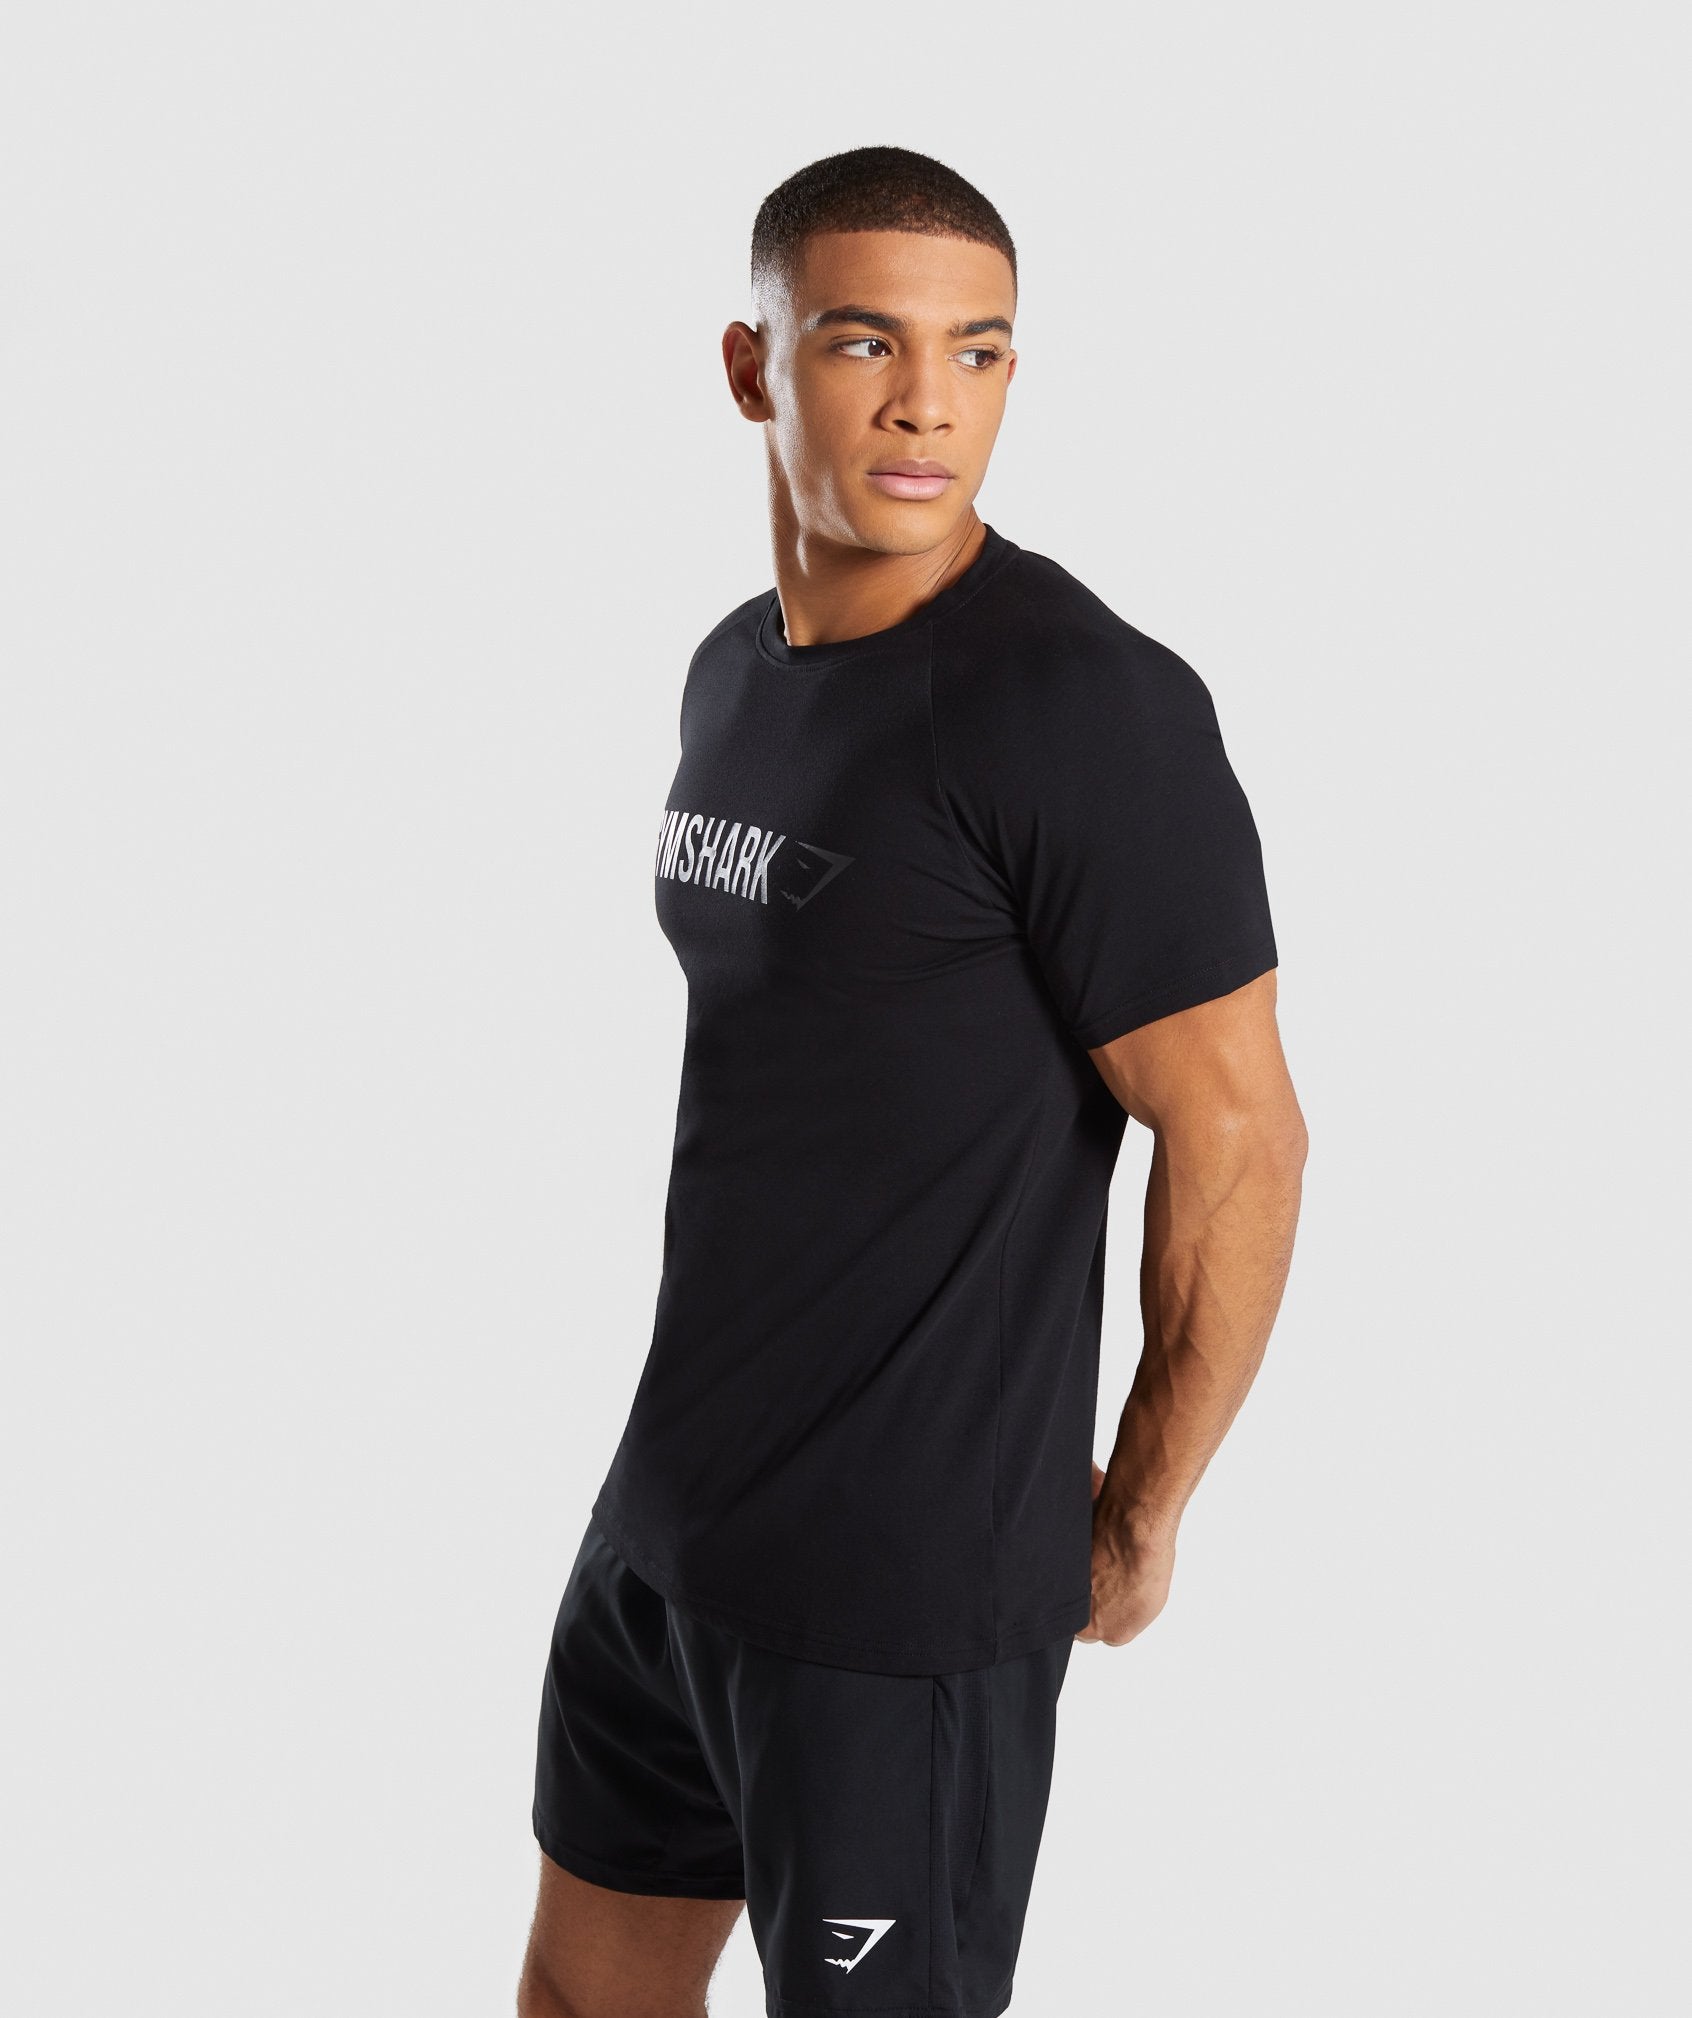 Apollo T-Shirt in Black - view 3